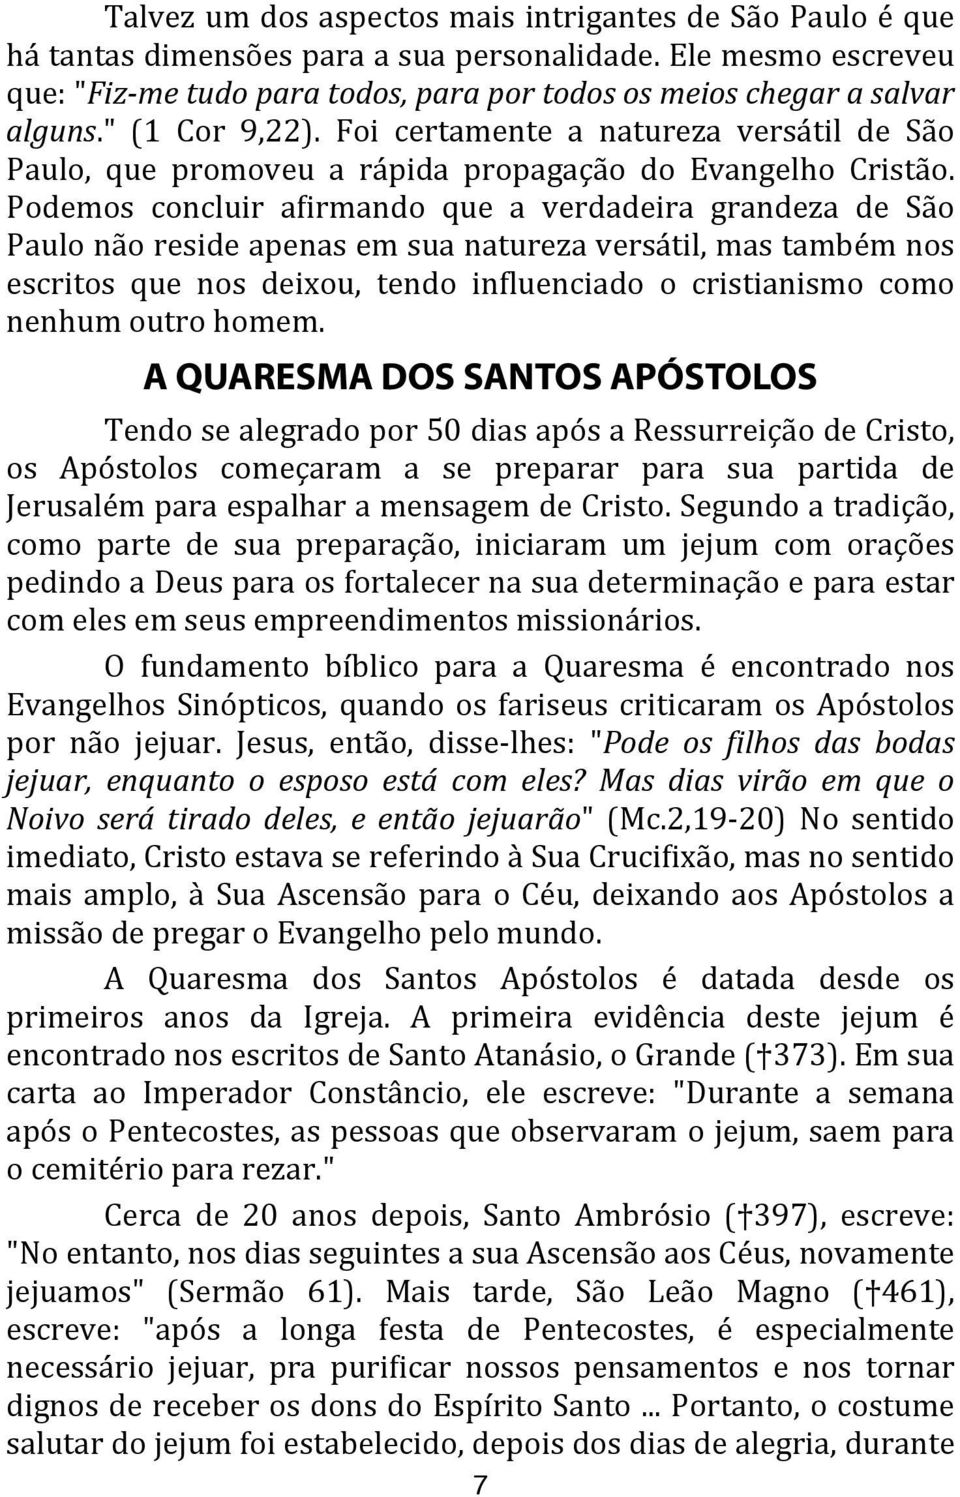 Foi certamente a natureza versátil de São Paulo, que promoveu a rápida propagação do Evangelho Cristão.